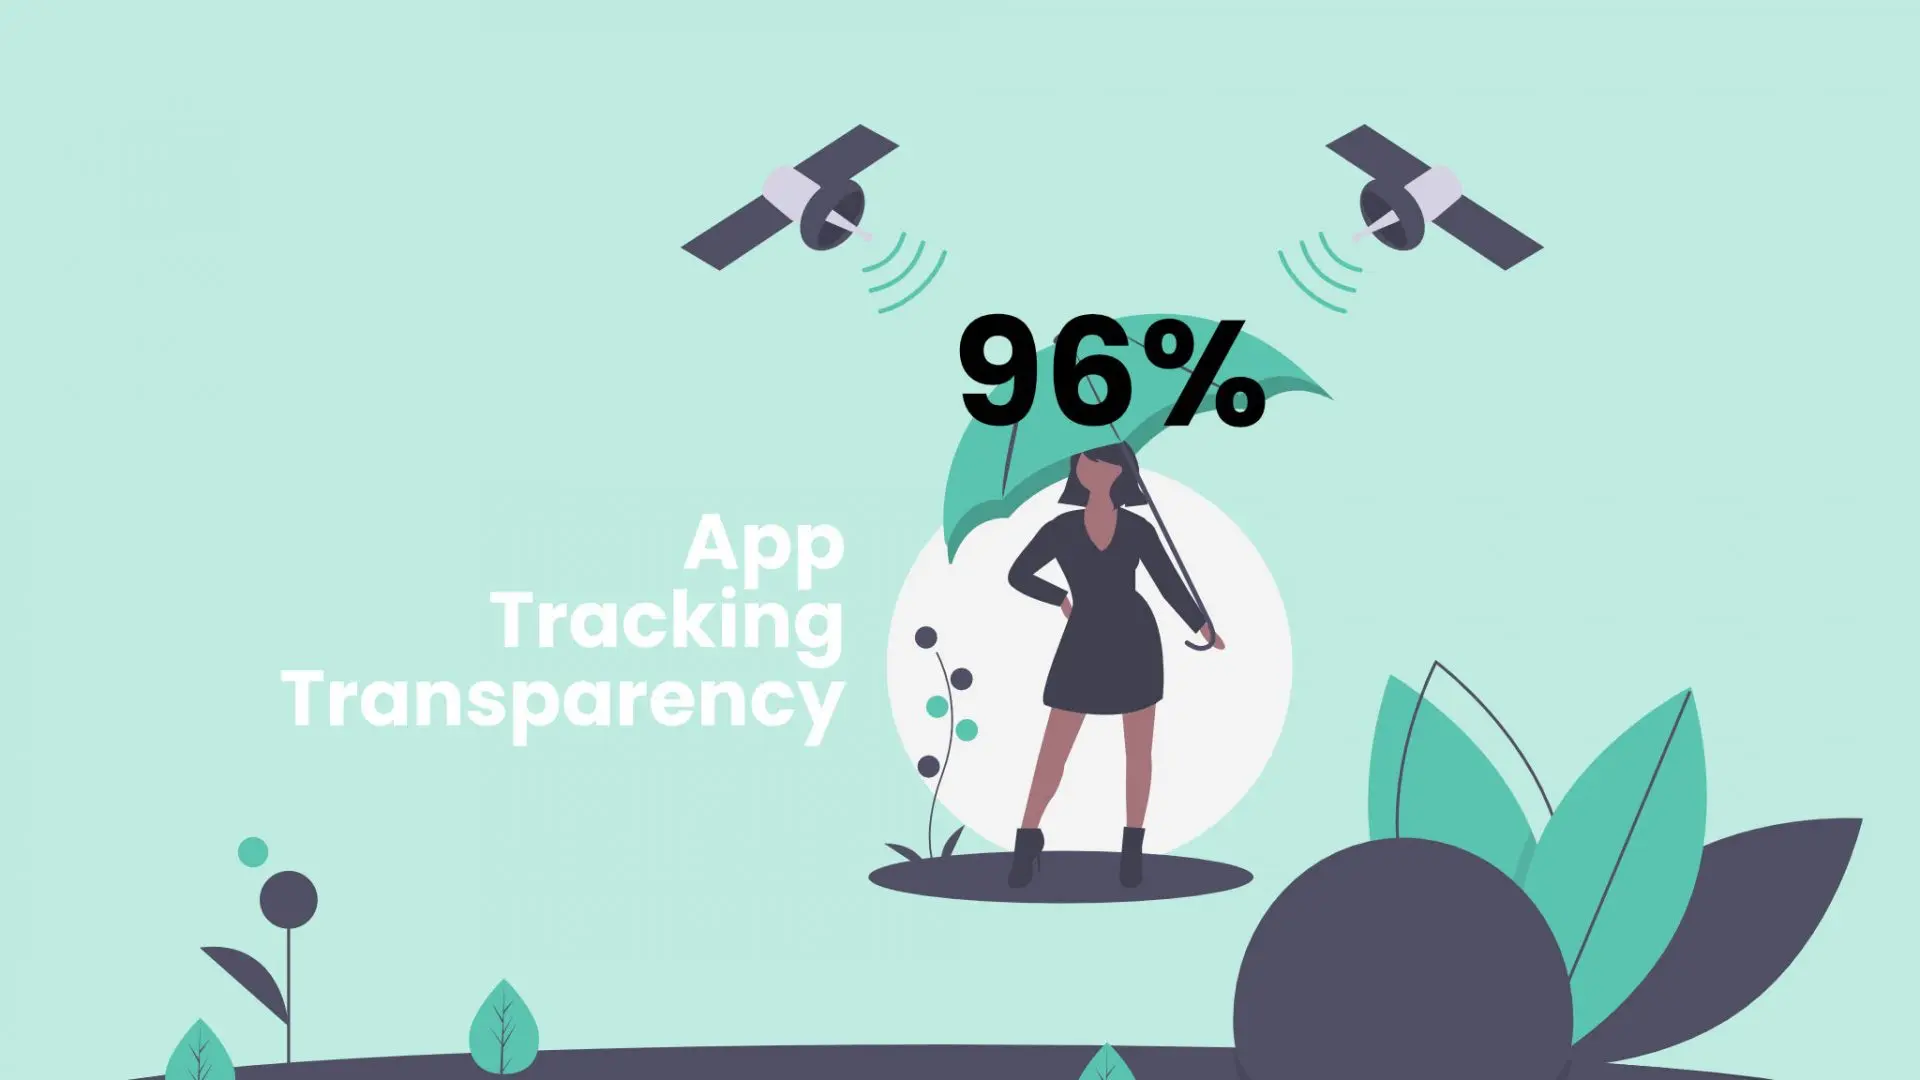 Apple App Tracking Transparency khiến các mạng xã hội thiệt hại 10 tỷ đô